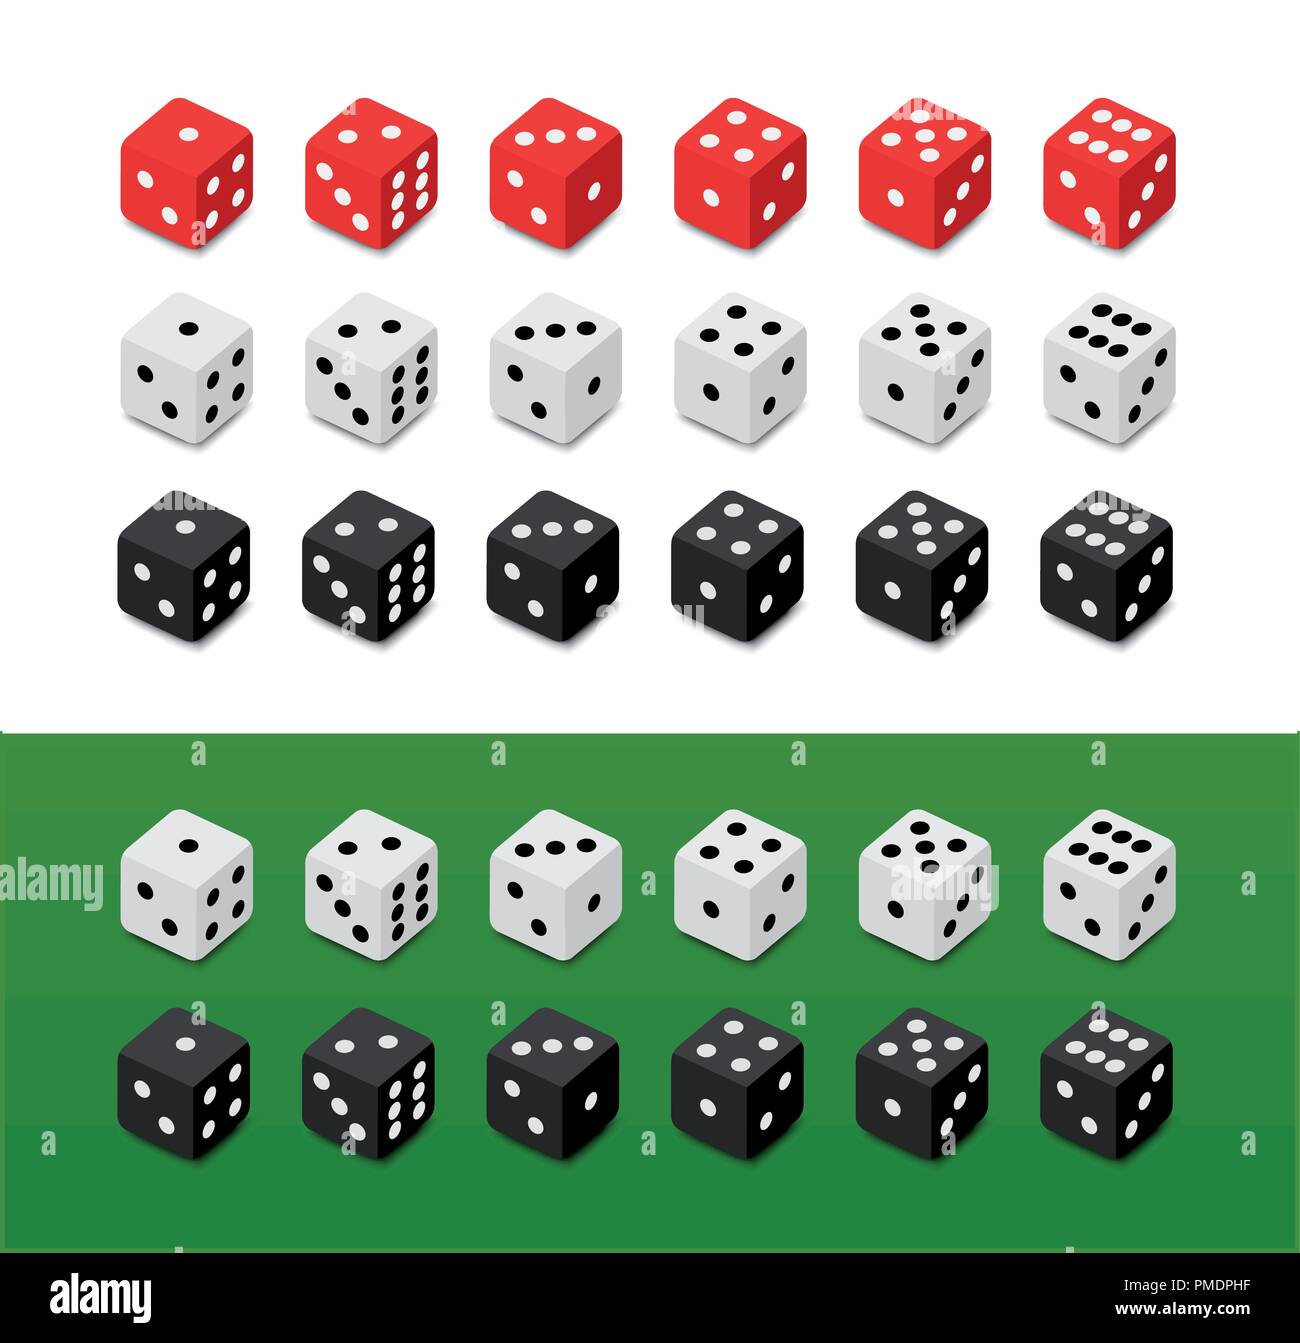 Würfel Würfel Punkt Zahlen von ein bis sechs Symbol-Set. Brettspiel oder  Casino Glücksspiel Vektor Illustration Stock-Vektorgrafik - Alamy